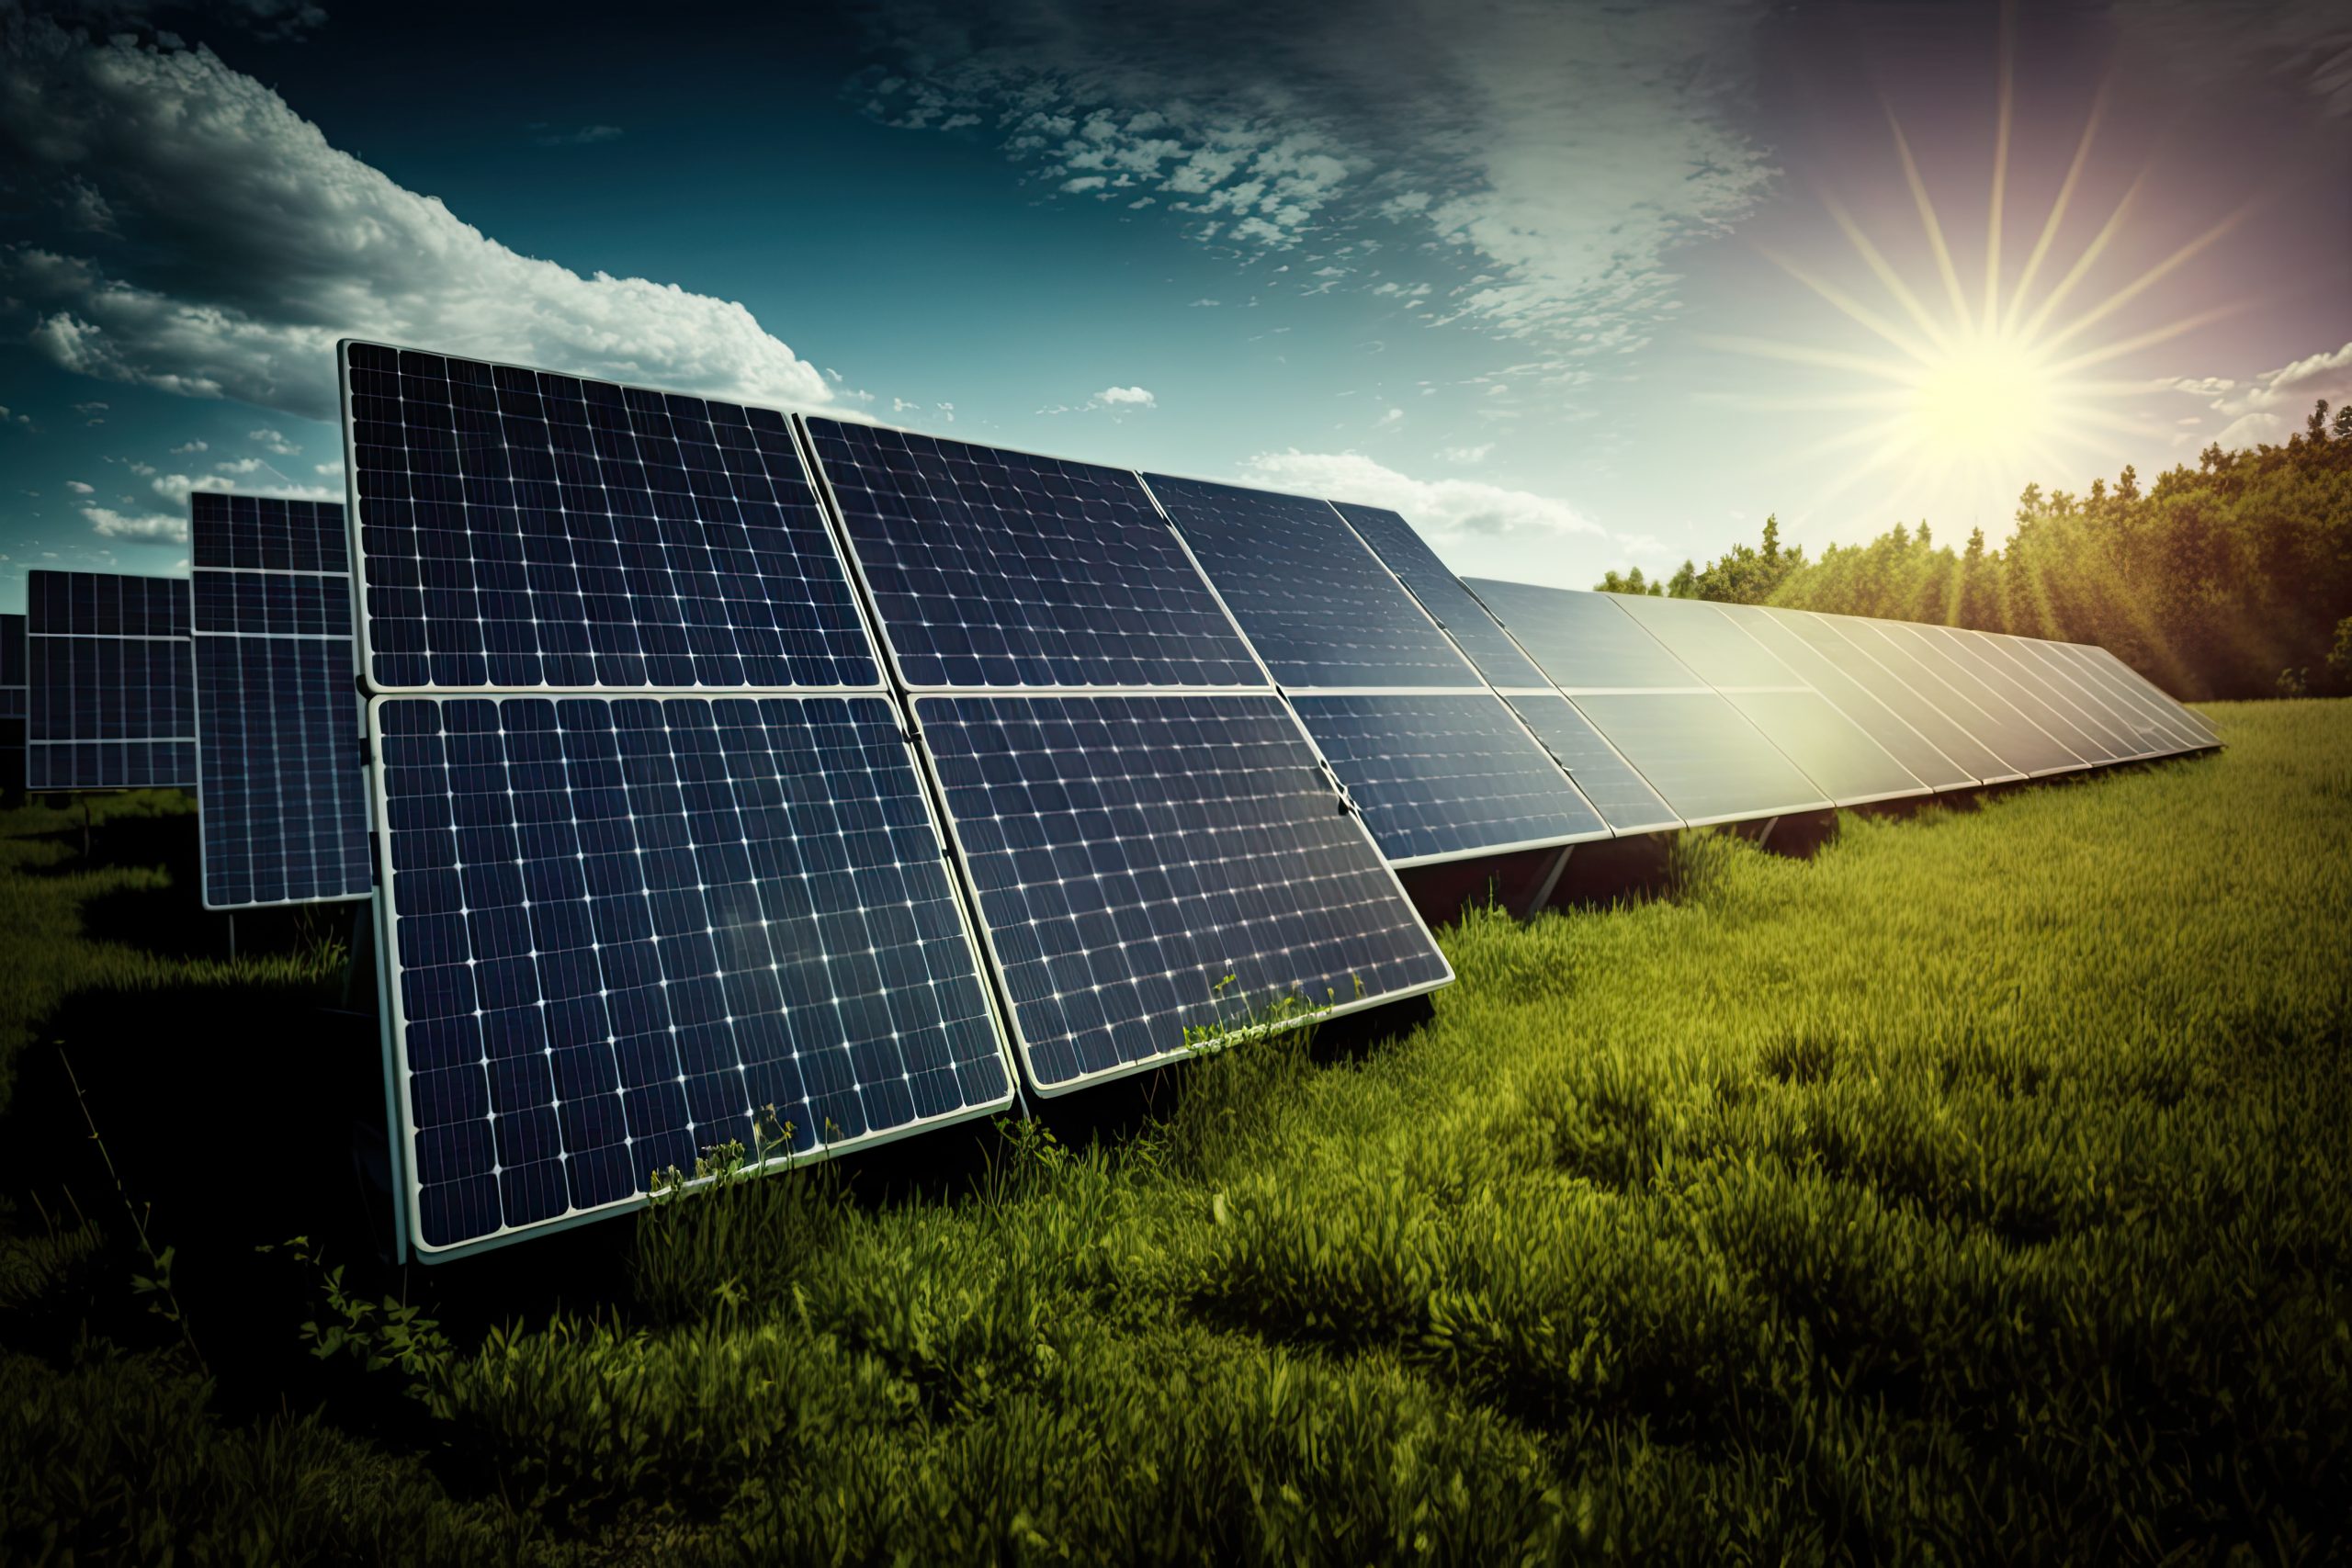 Painéis solares fotovoltaicos em um campo verde sob um céu claro com sol brilhante, ilustrando o conceito de energia alternativa.